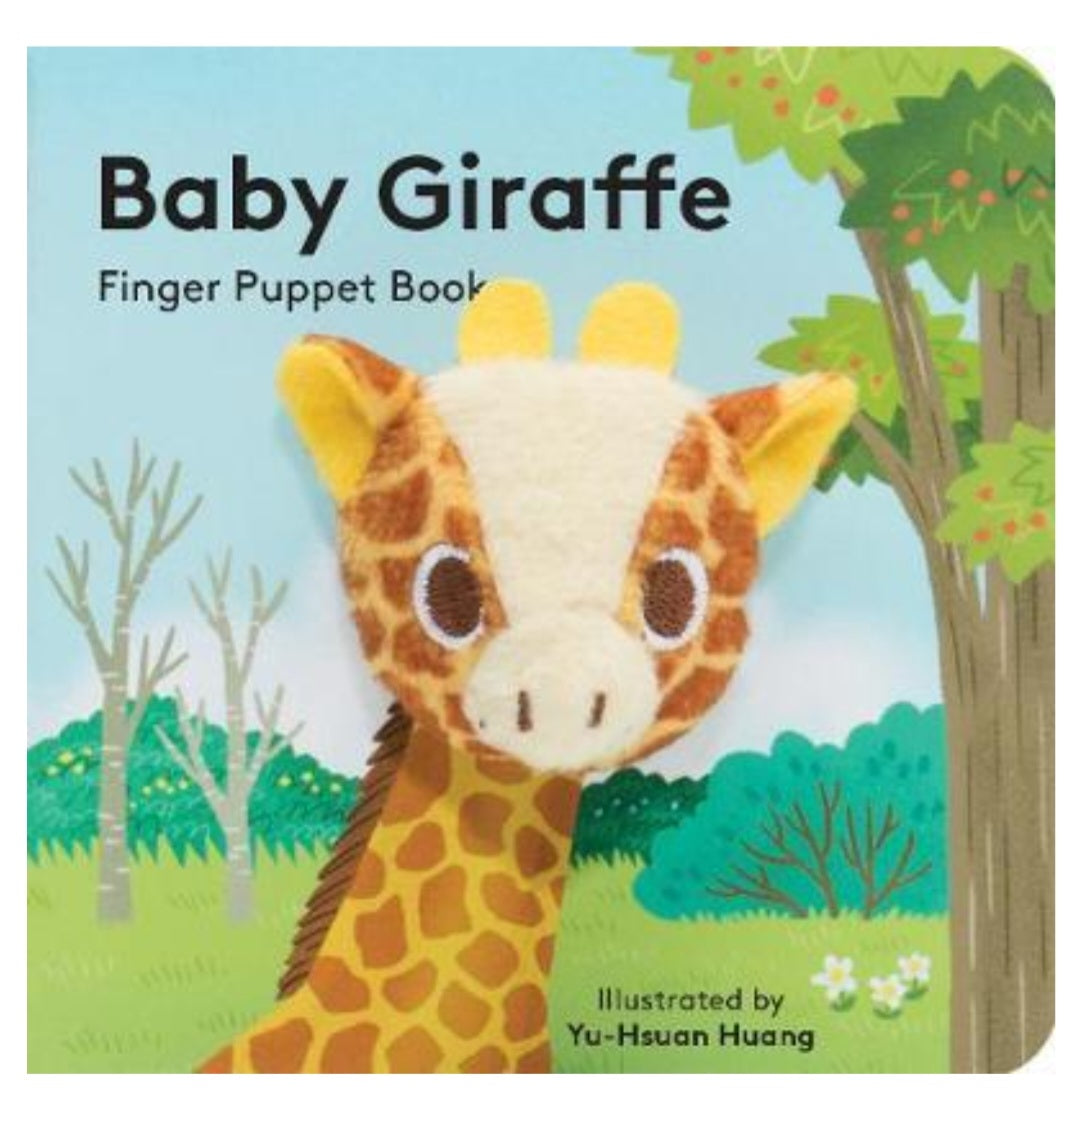 Book - Baby Giraffe Finger Puppet